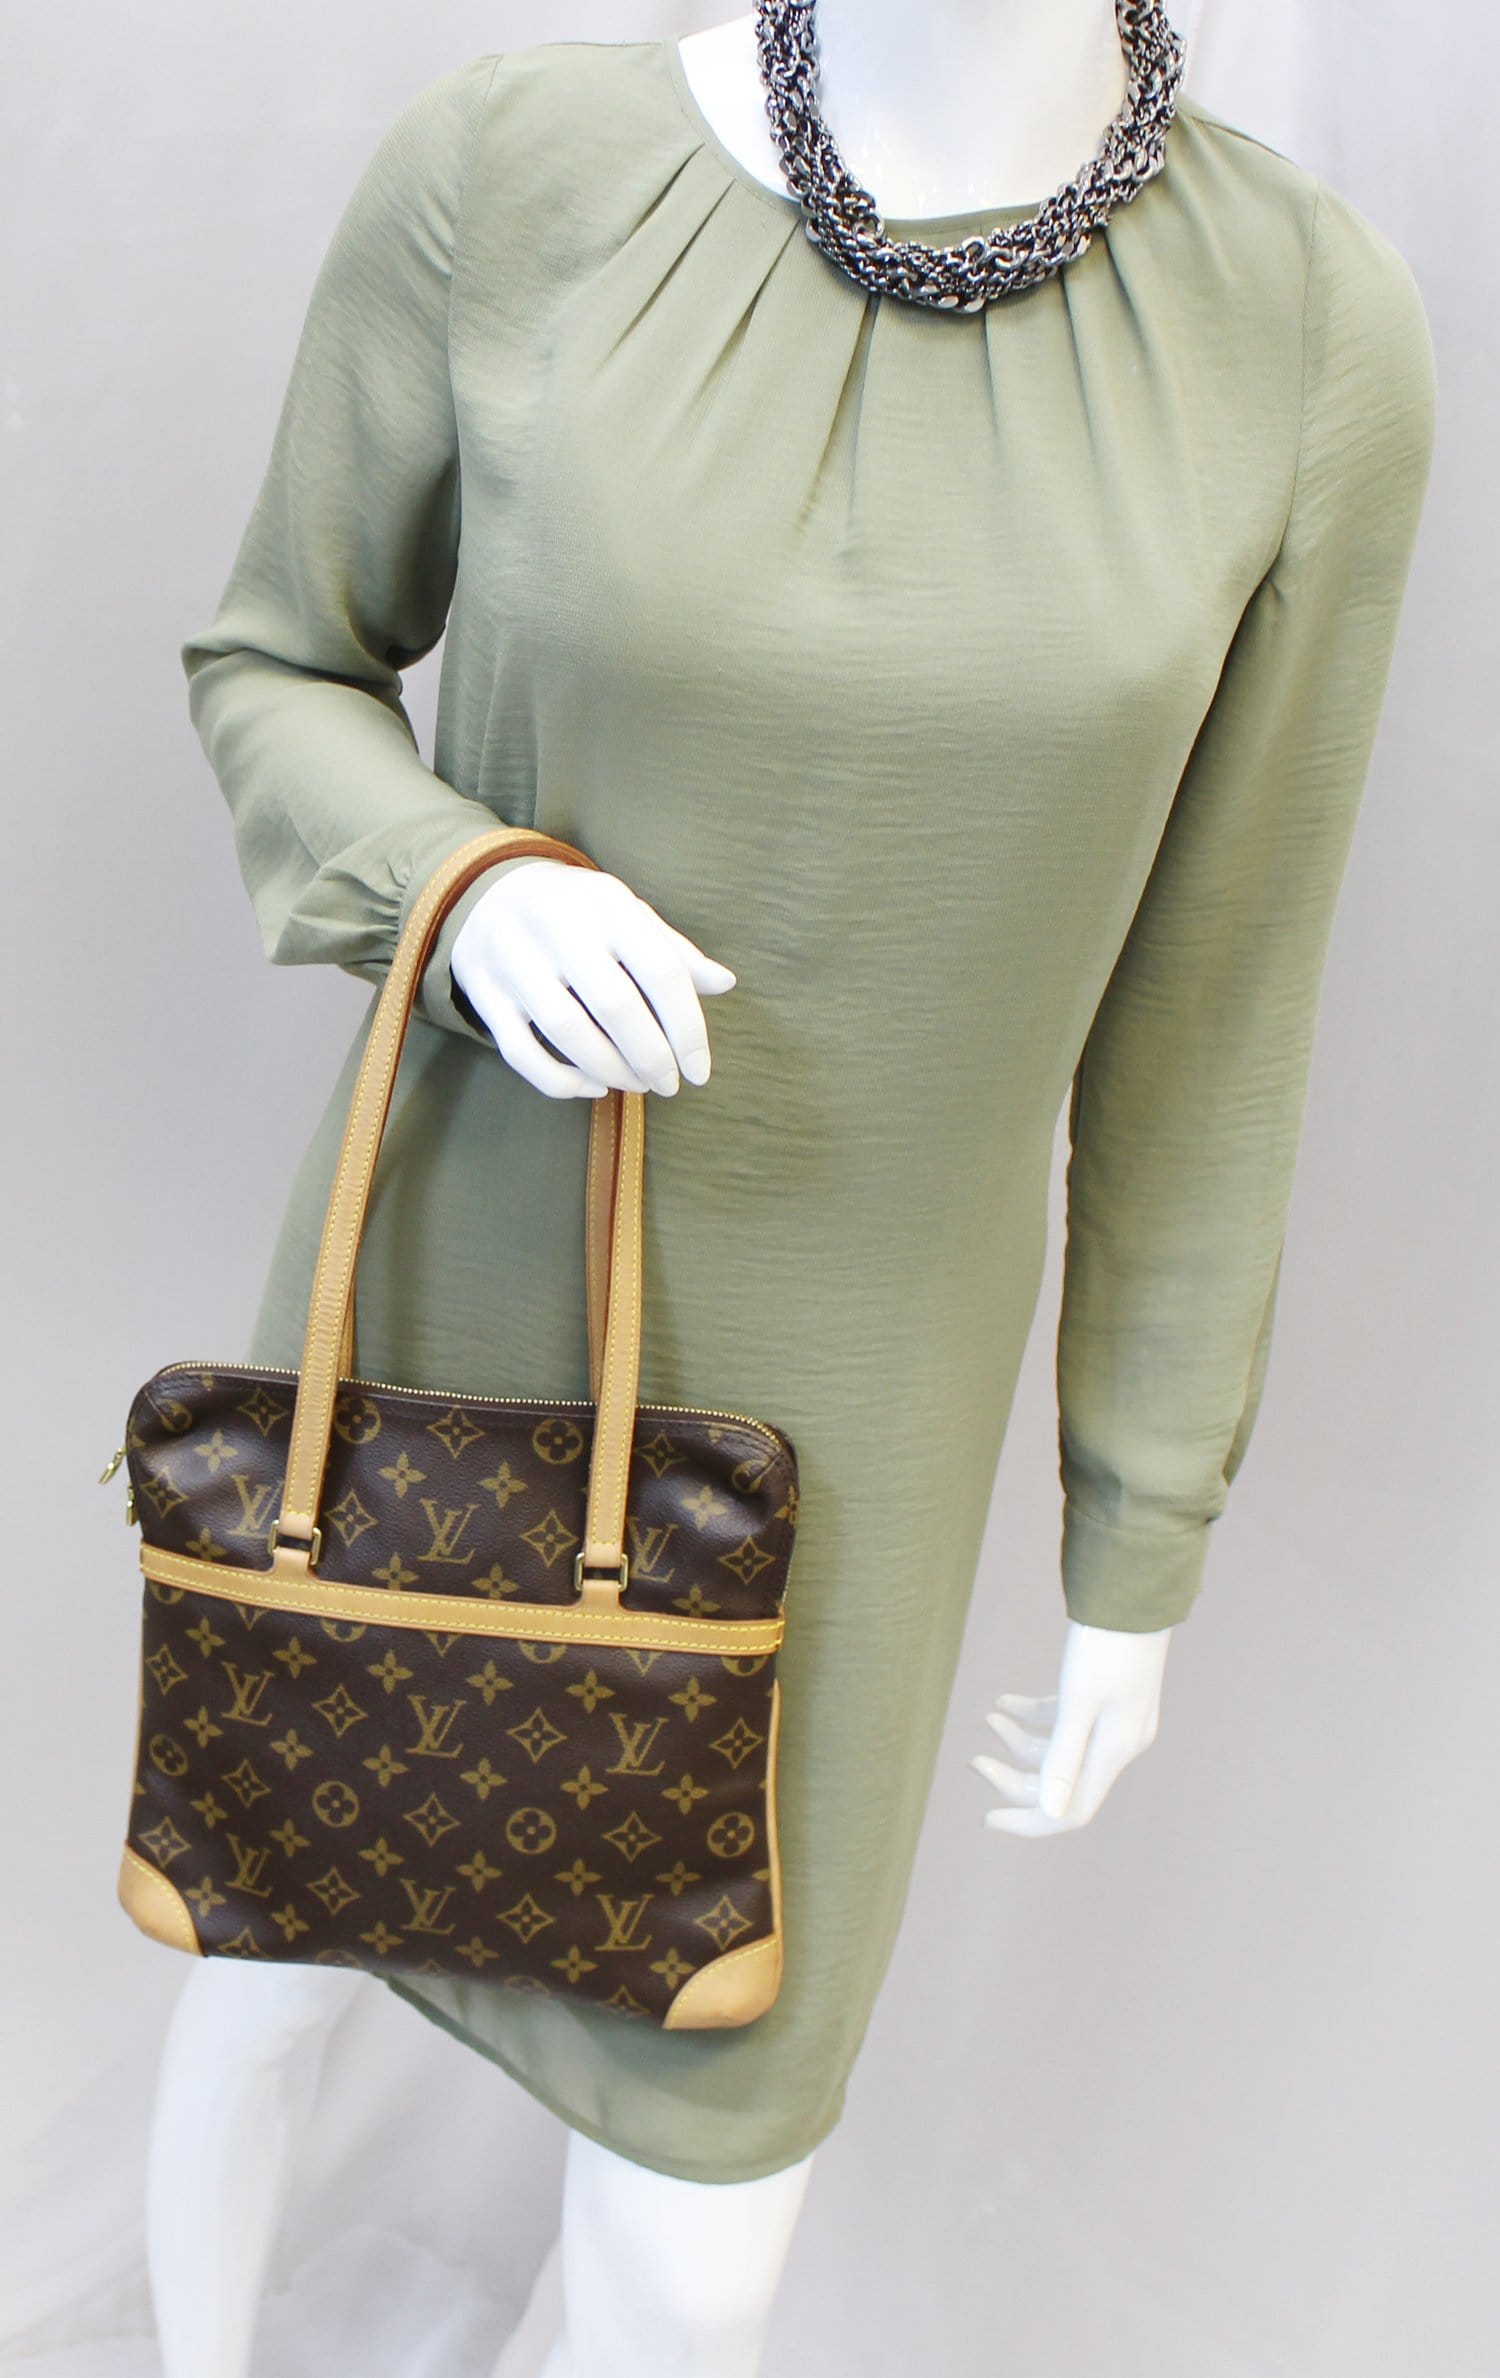 Louis Vuitton Vintage Sac Coussin GM Monogram Shoulder Bag